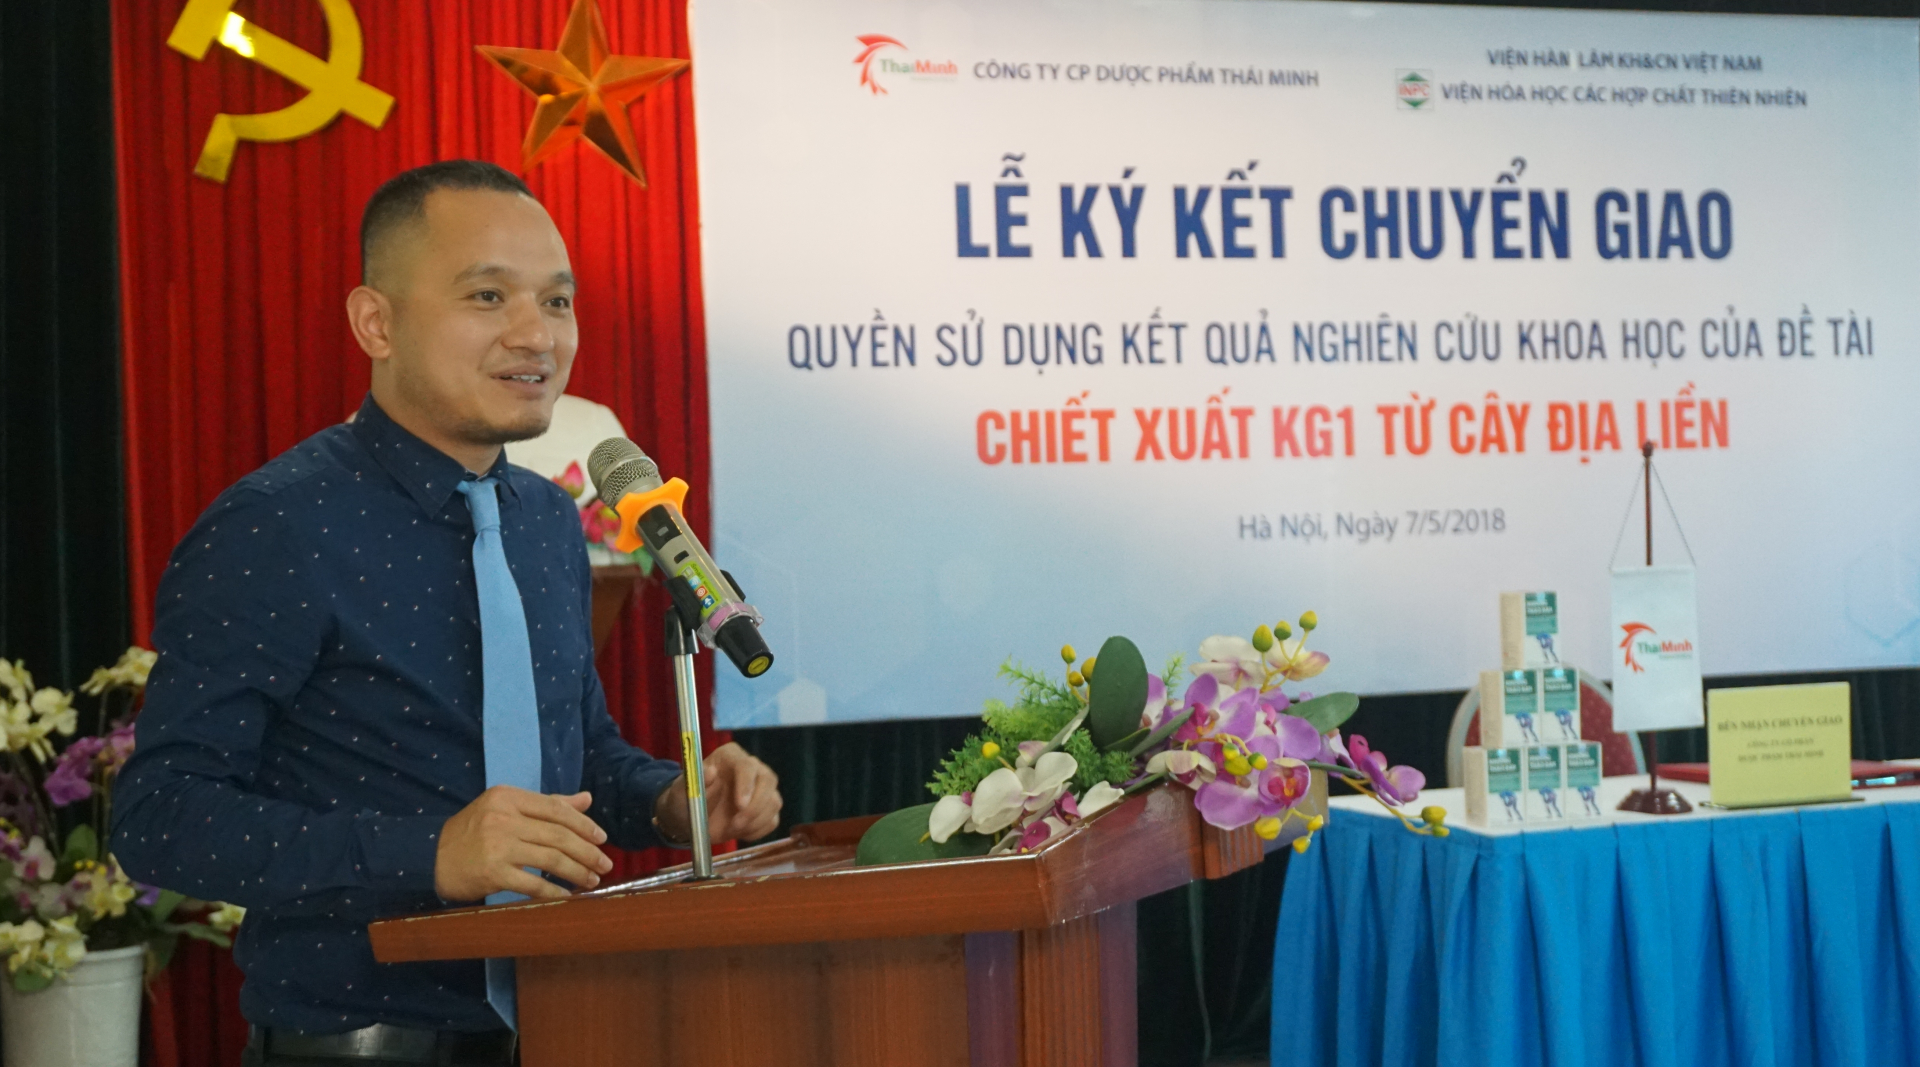 Ông Nguyễn Quang Thái - Giám đốc Công ty CP Dược phẩm Thái Minh